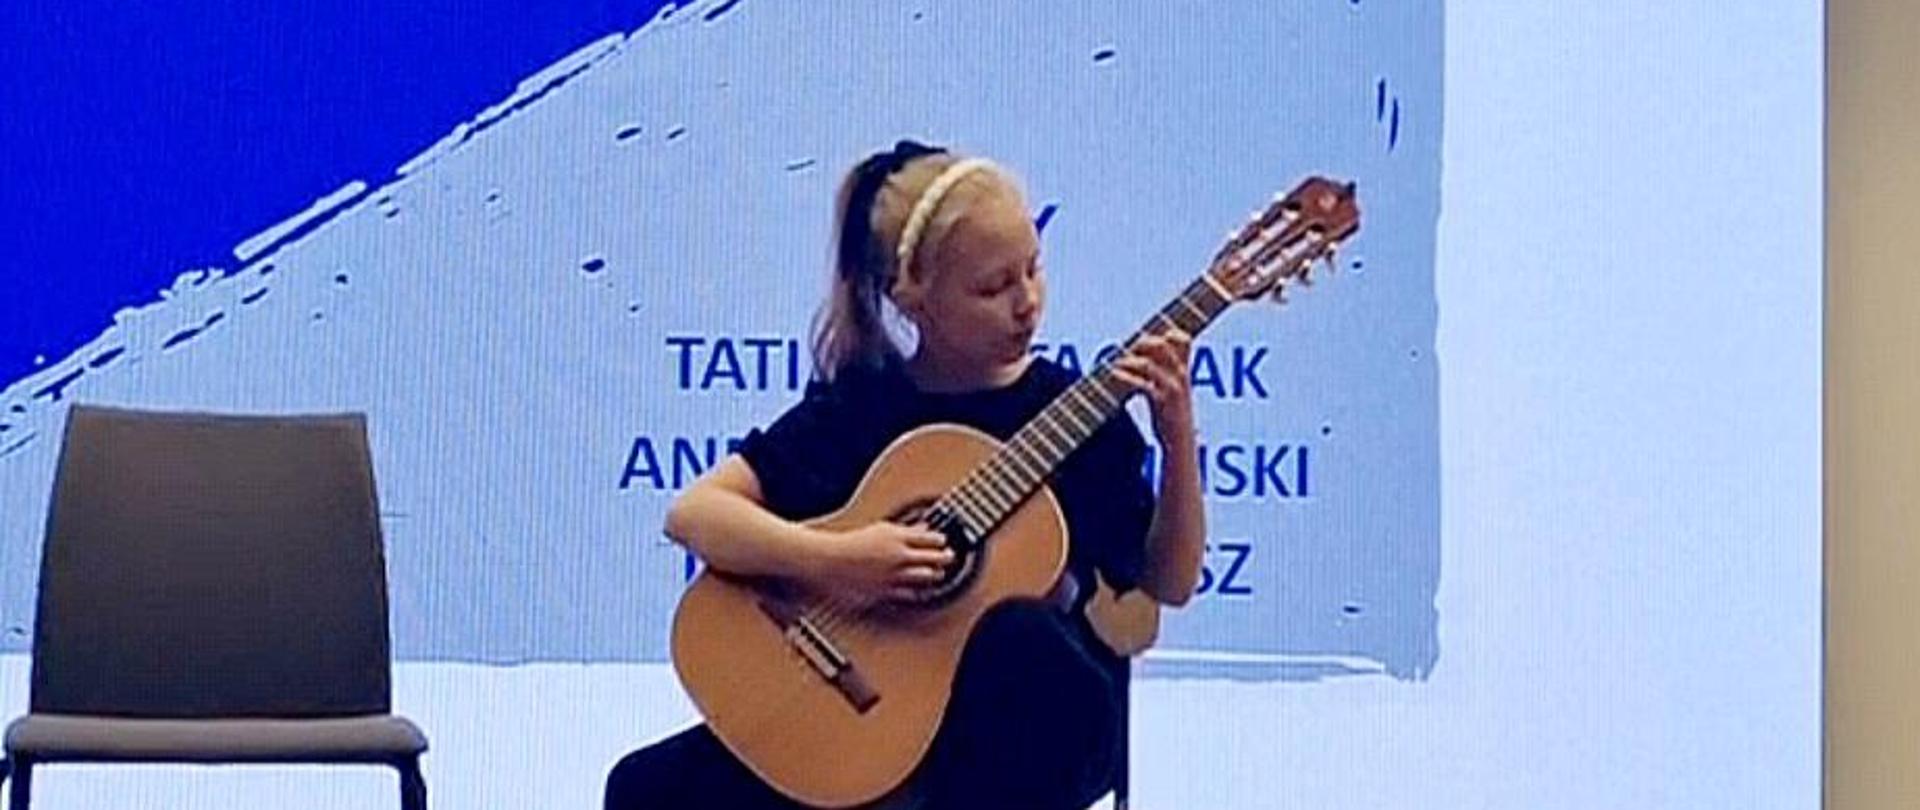 Zdjęcie uczennicy grającej na gitarze podczas prezentacji konkursowej